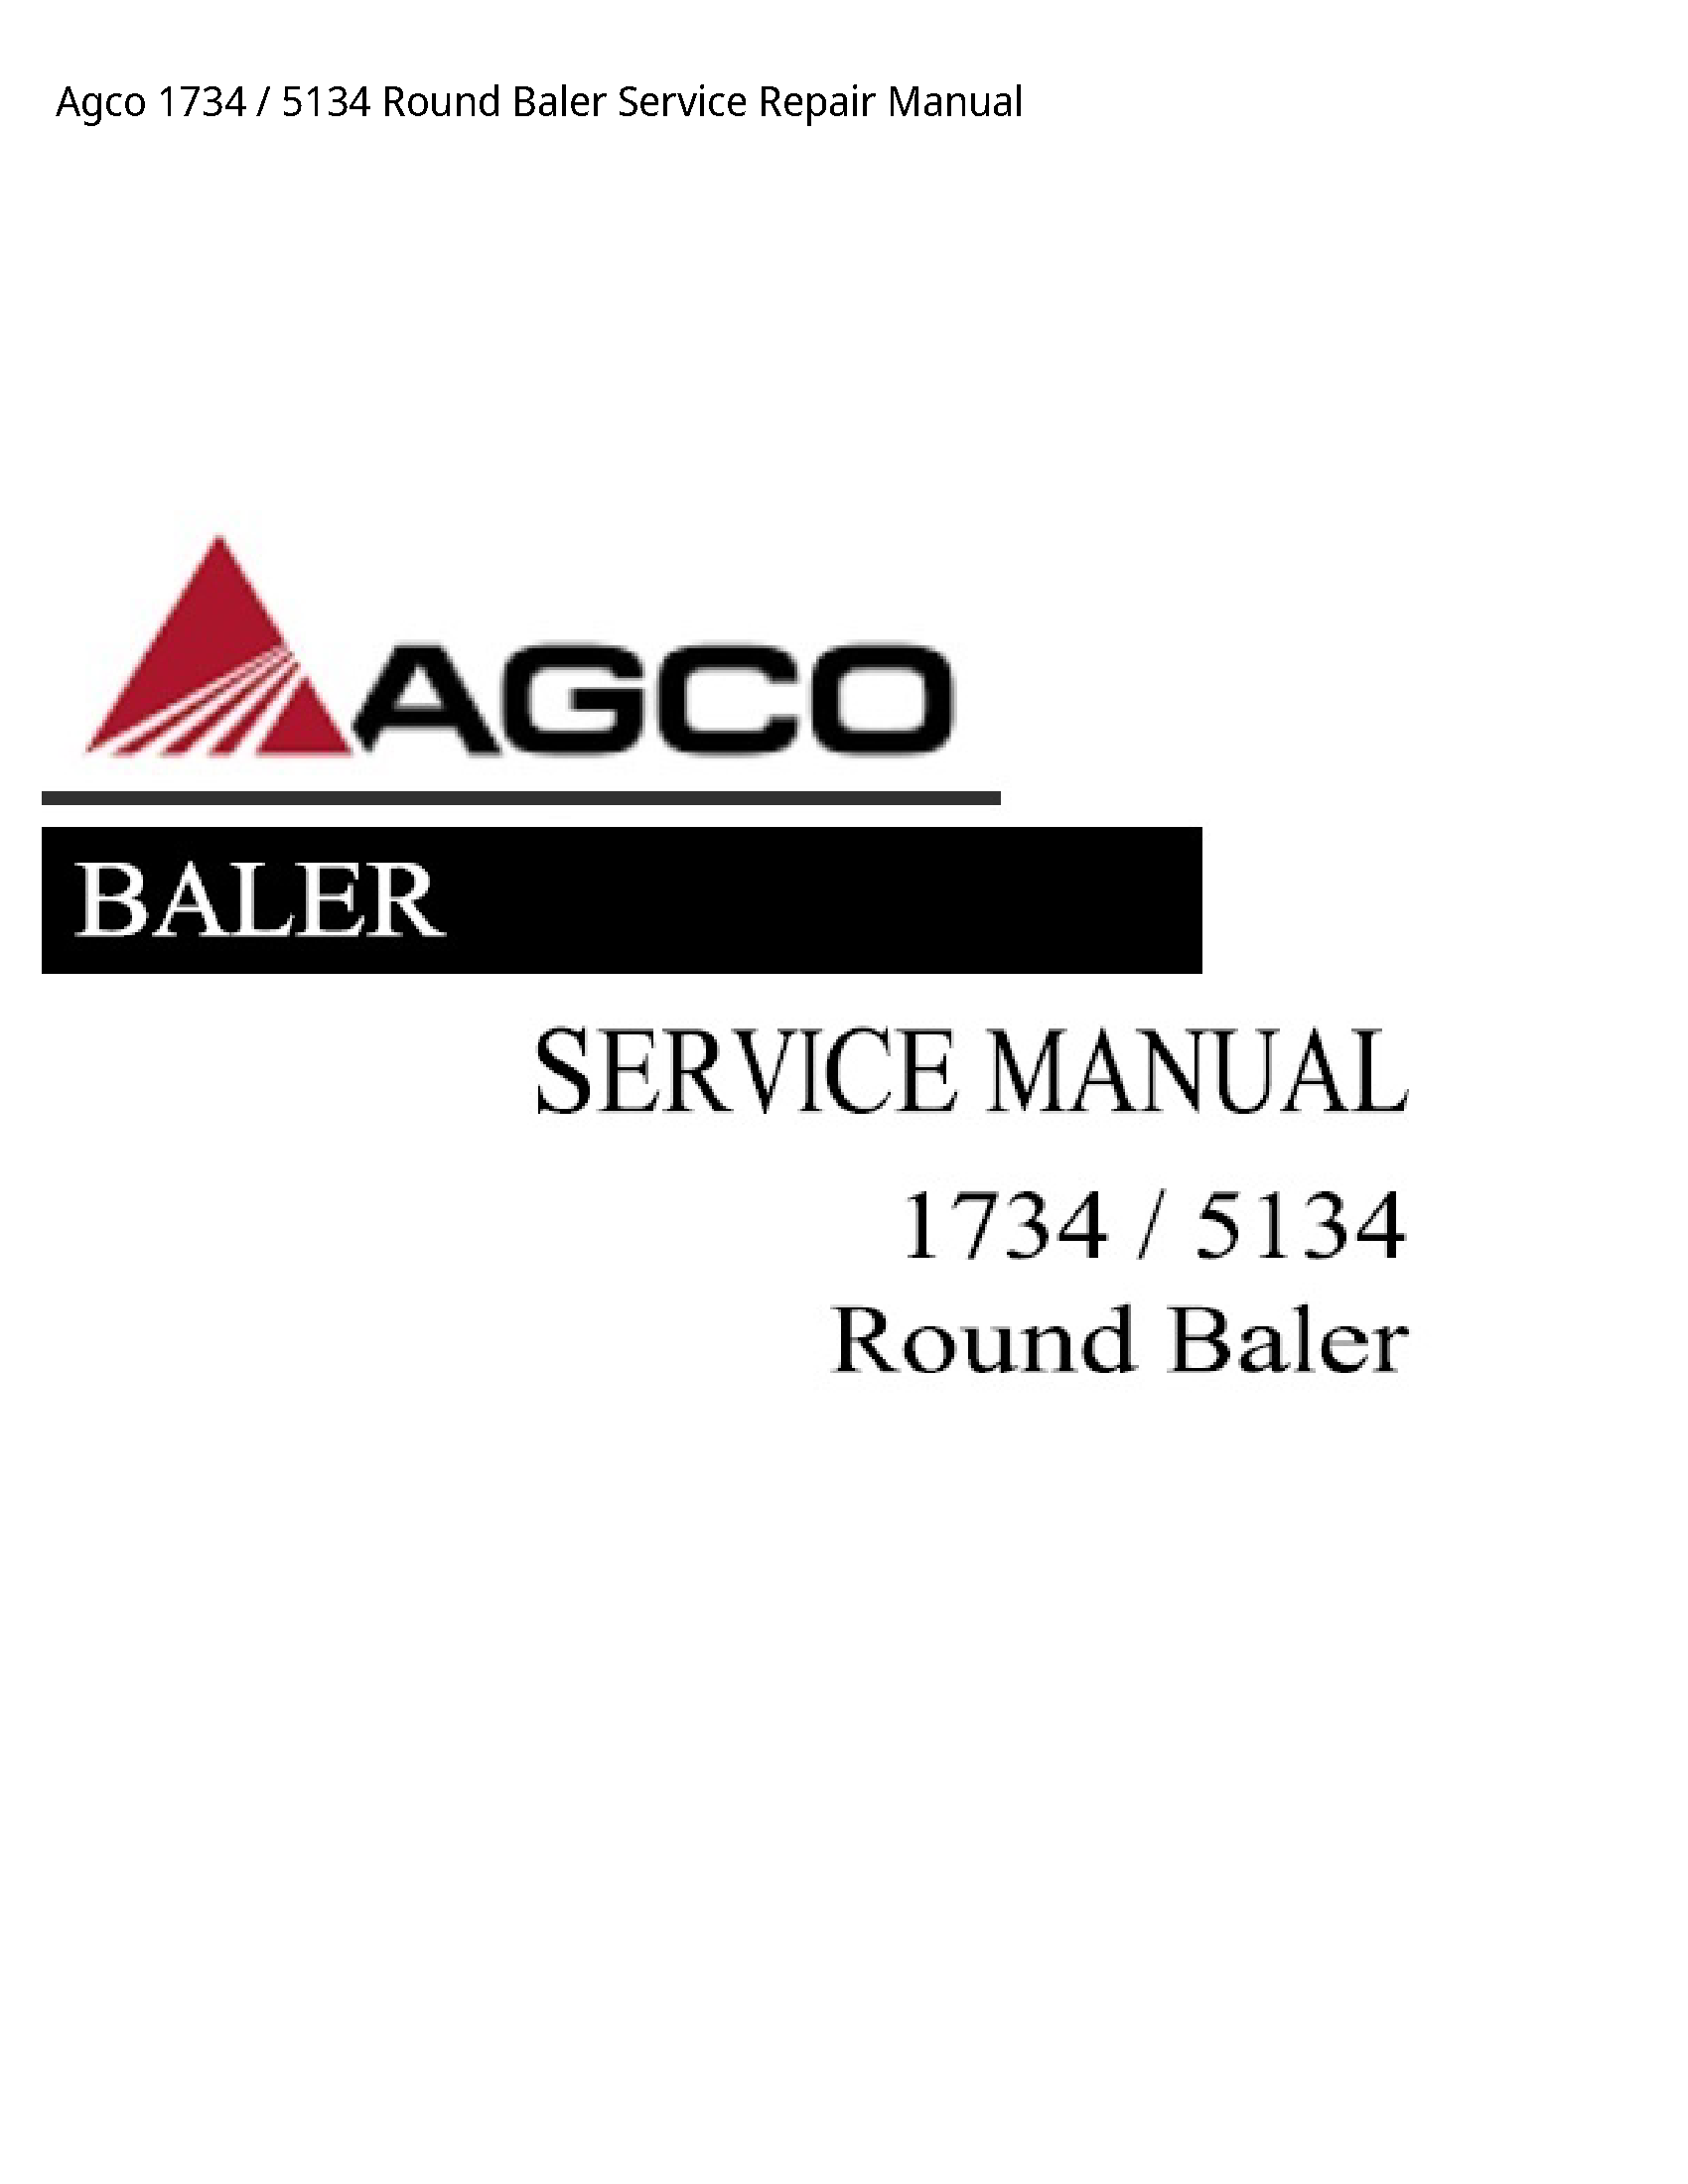 AGCO 1734 Round Baler manual